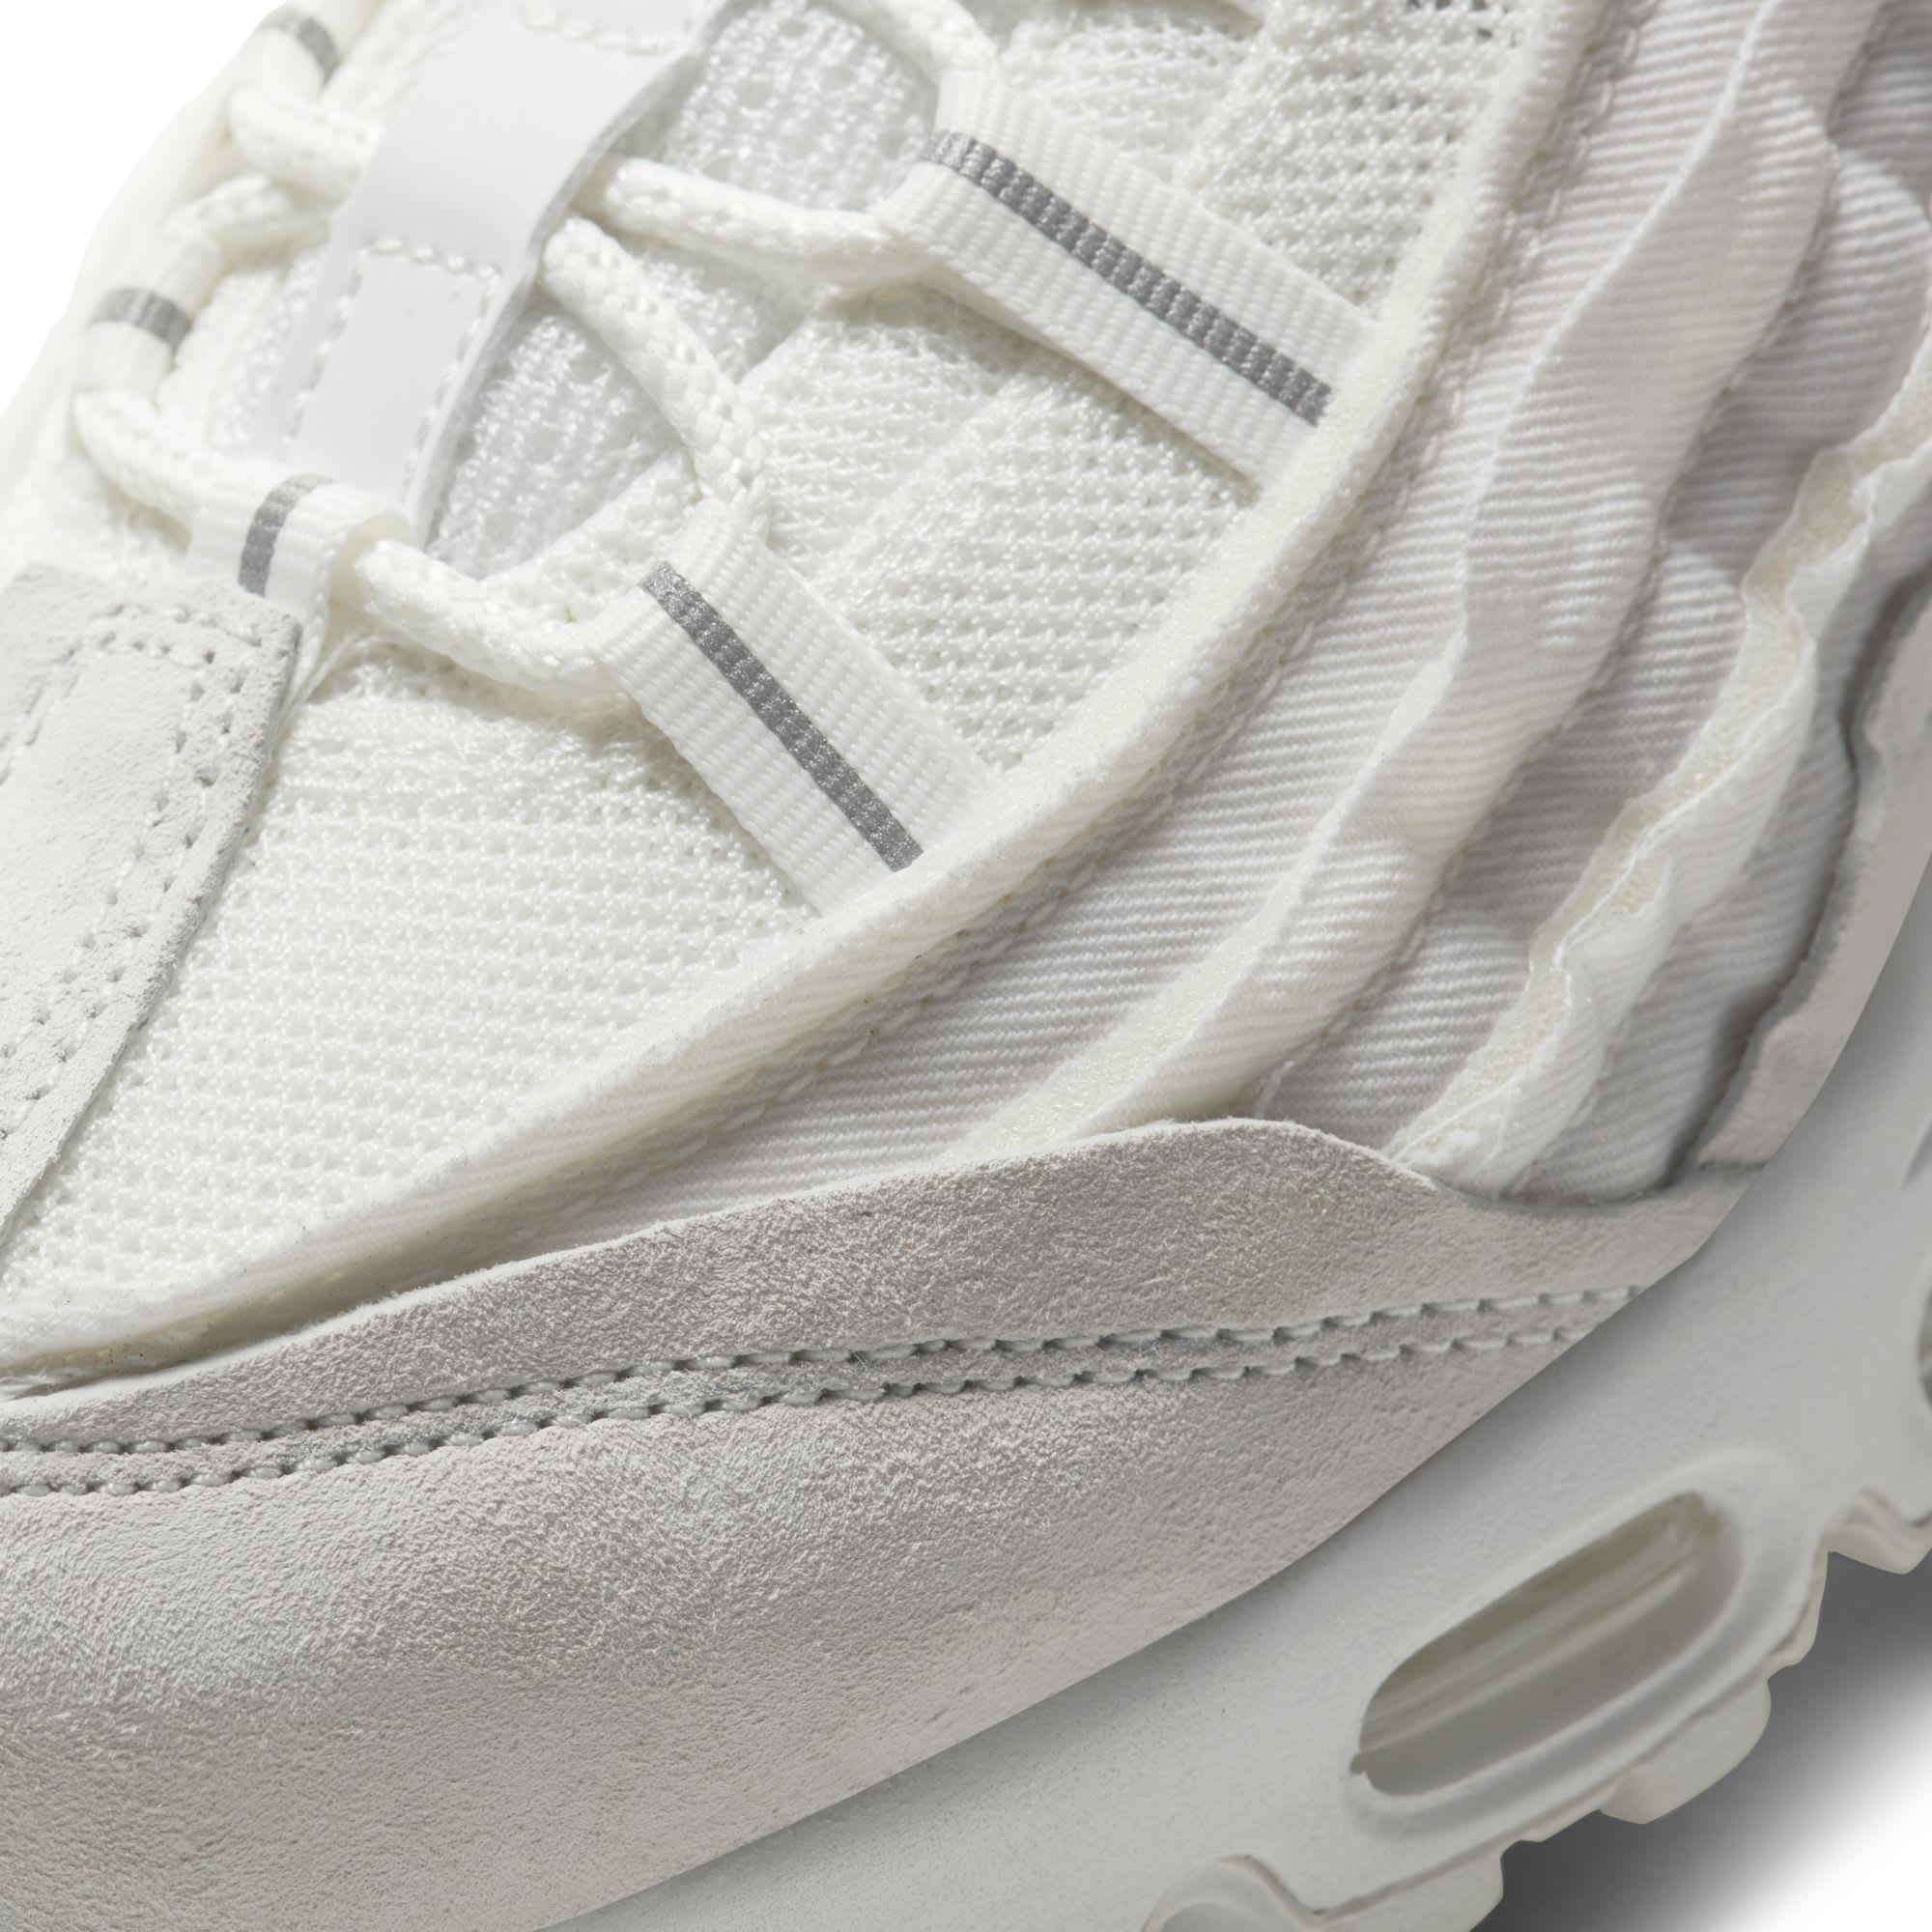 Comme des Garçons x Nike Air Max 95 'White' (Detail)